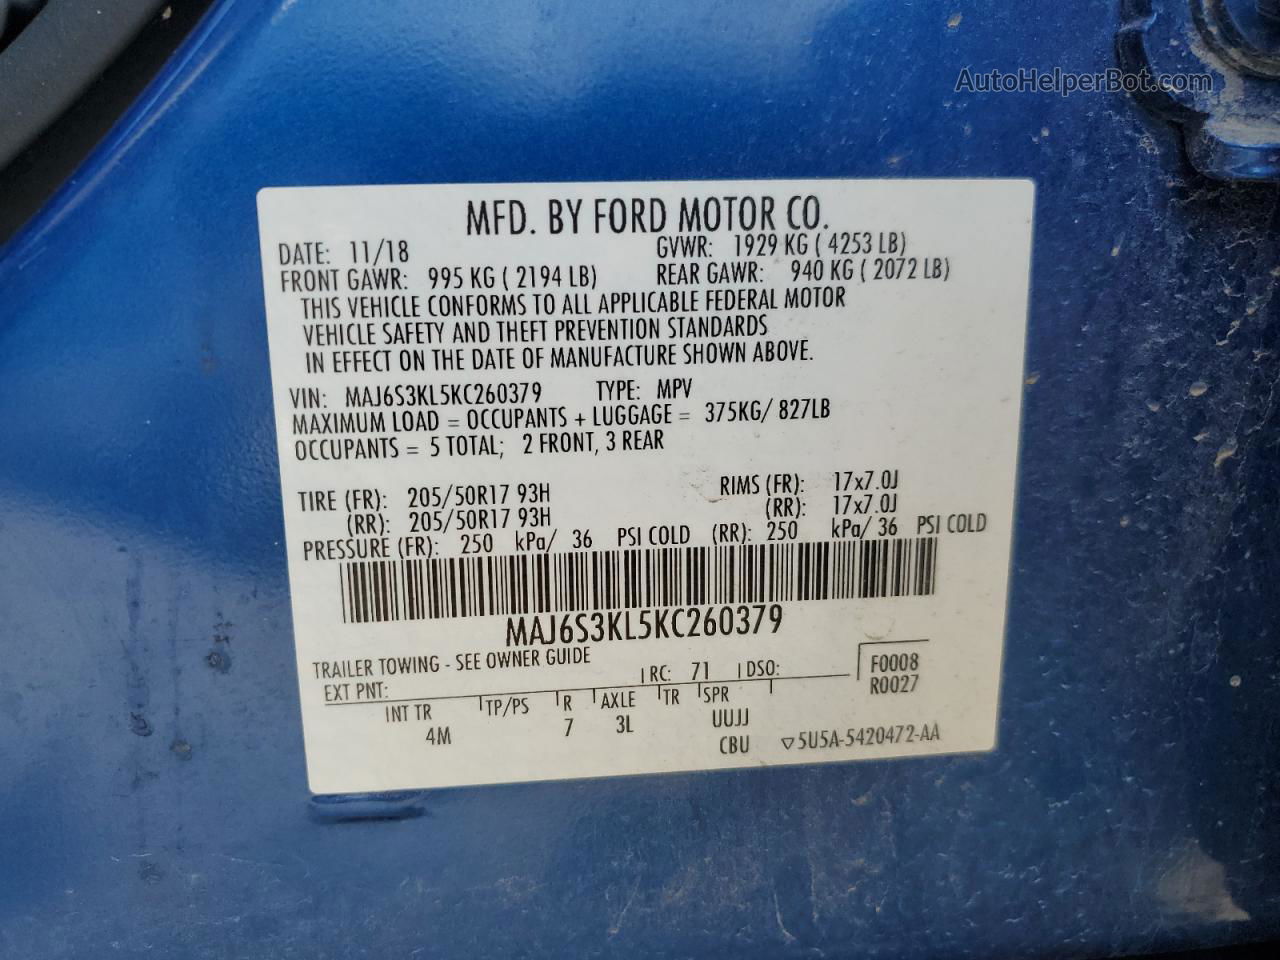 2019 Ford Ecosport Titanium Blue vin: MAJ6S3KL5KC260379